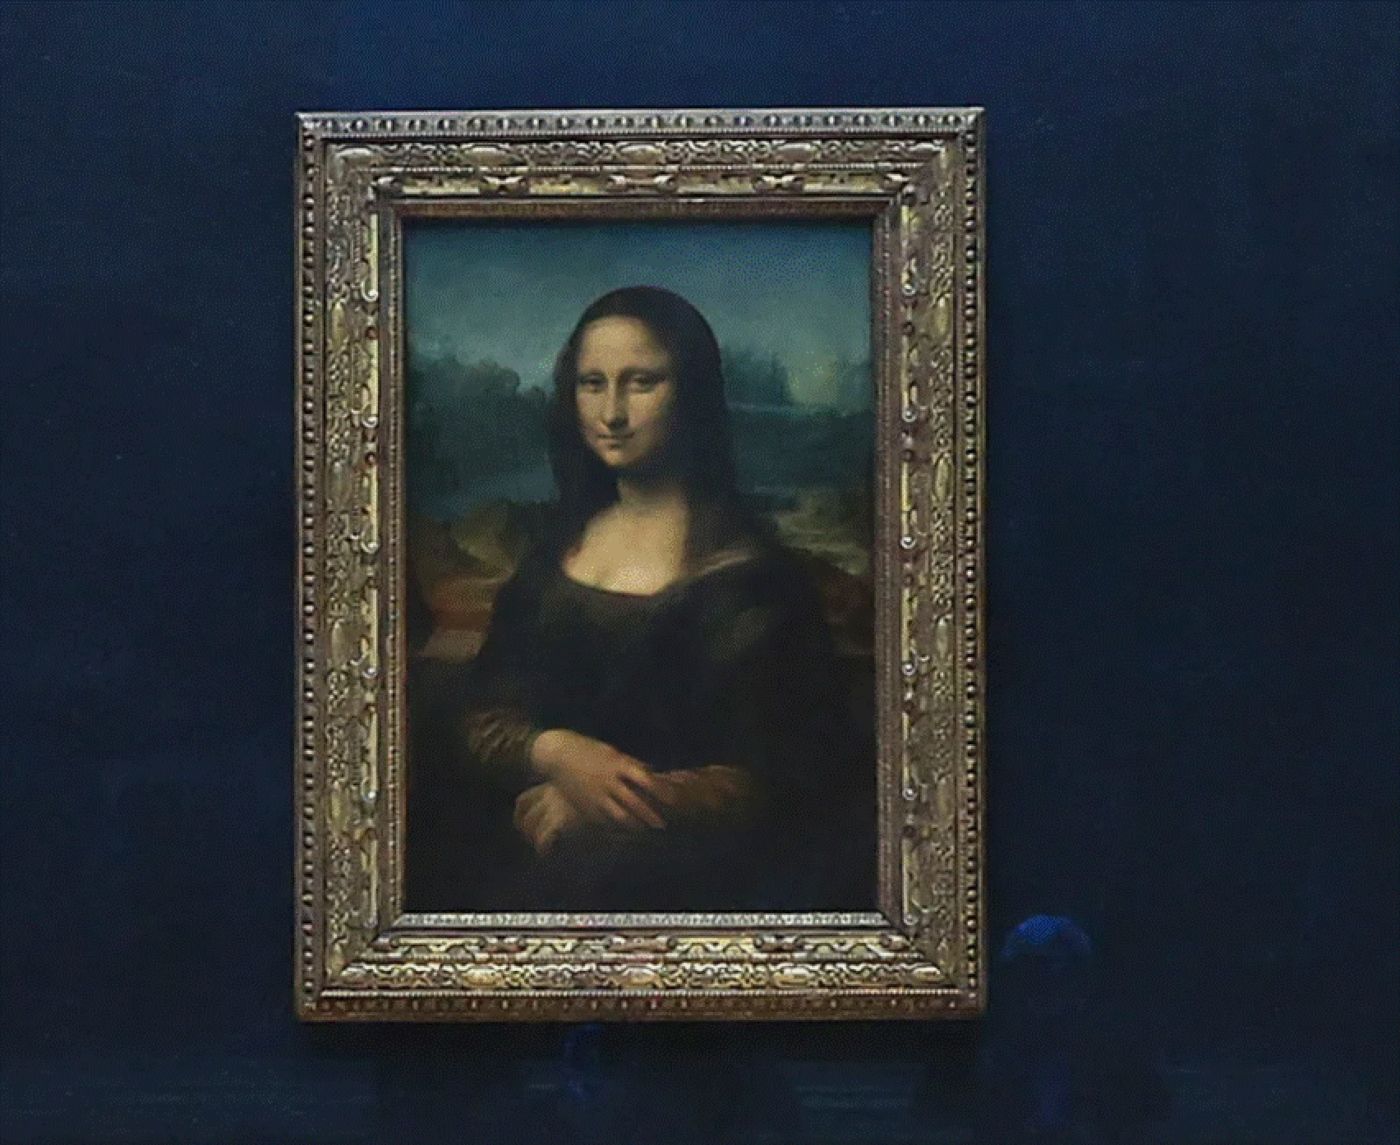 Un compus rar, detectat în celebrul tablou „Mona Lisa”, dezvăluie un nou secret